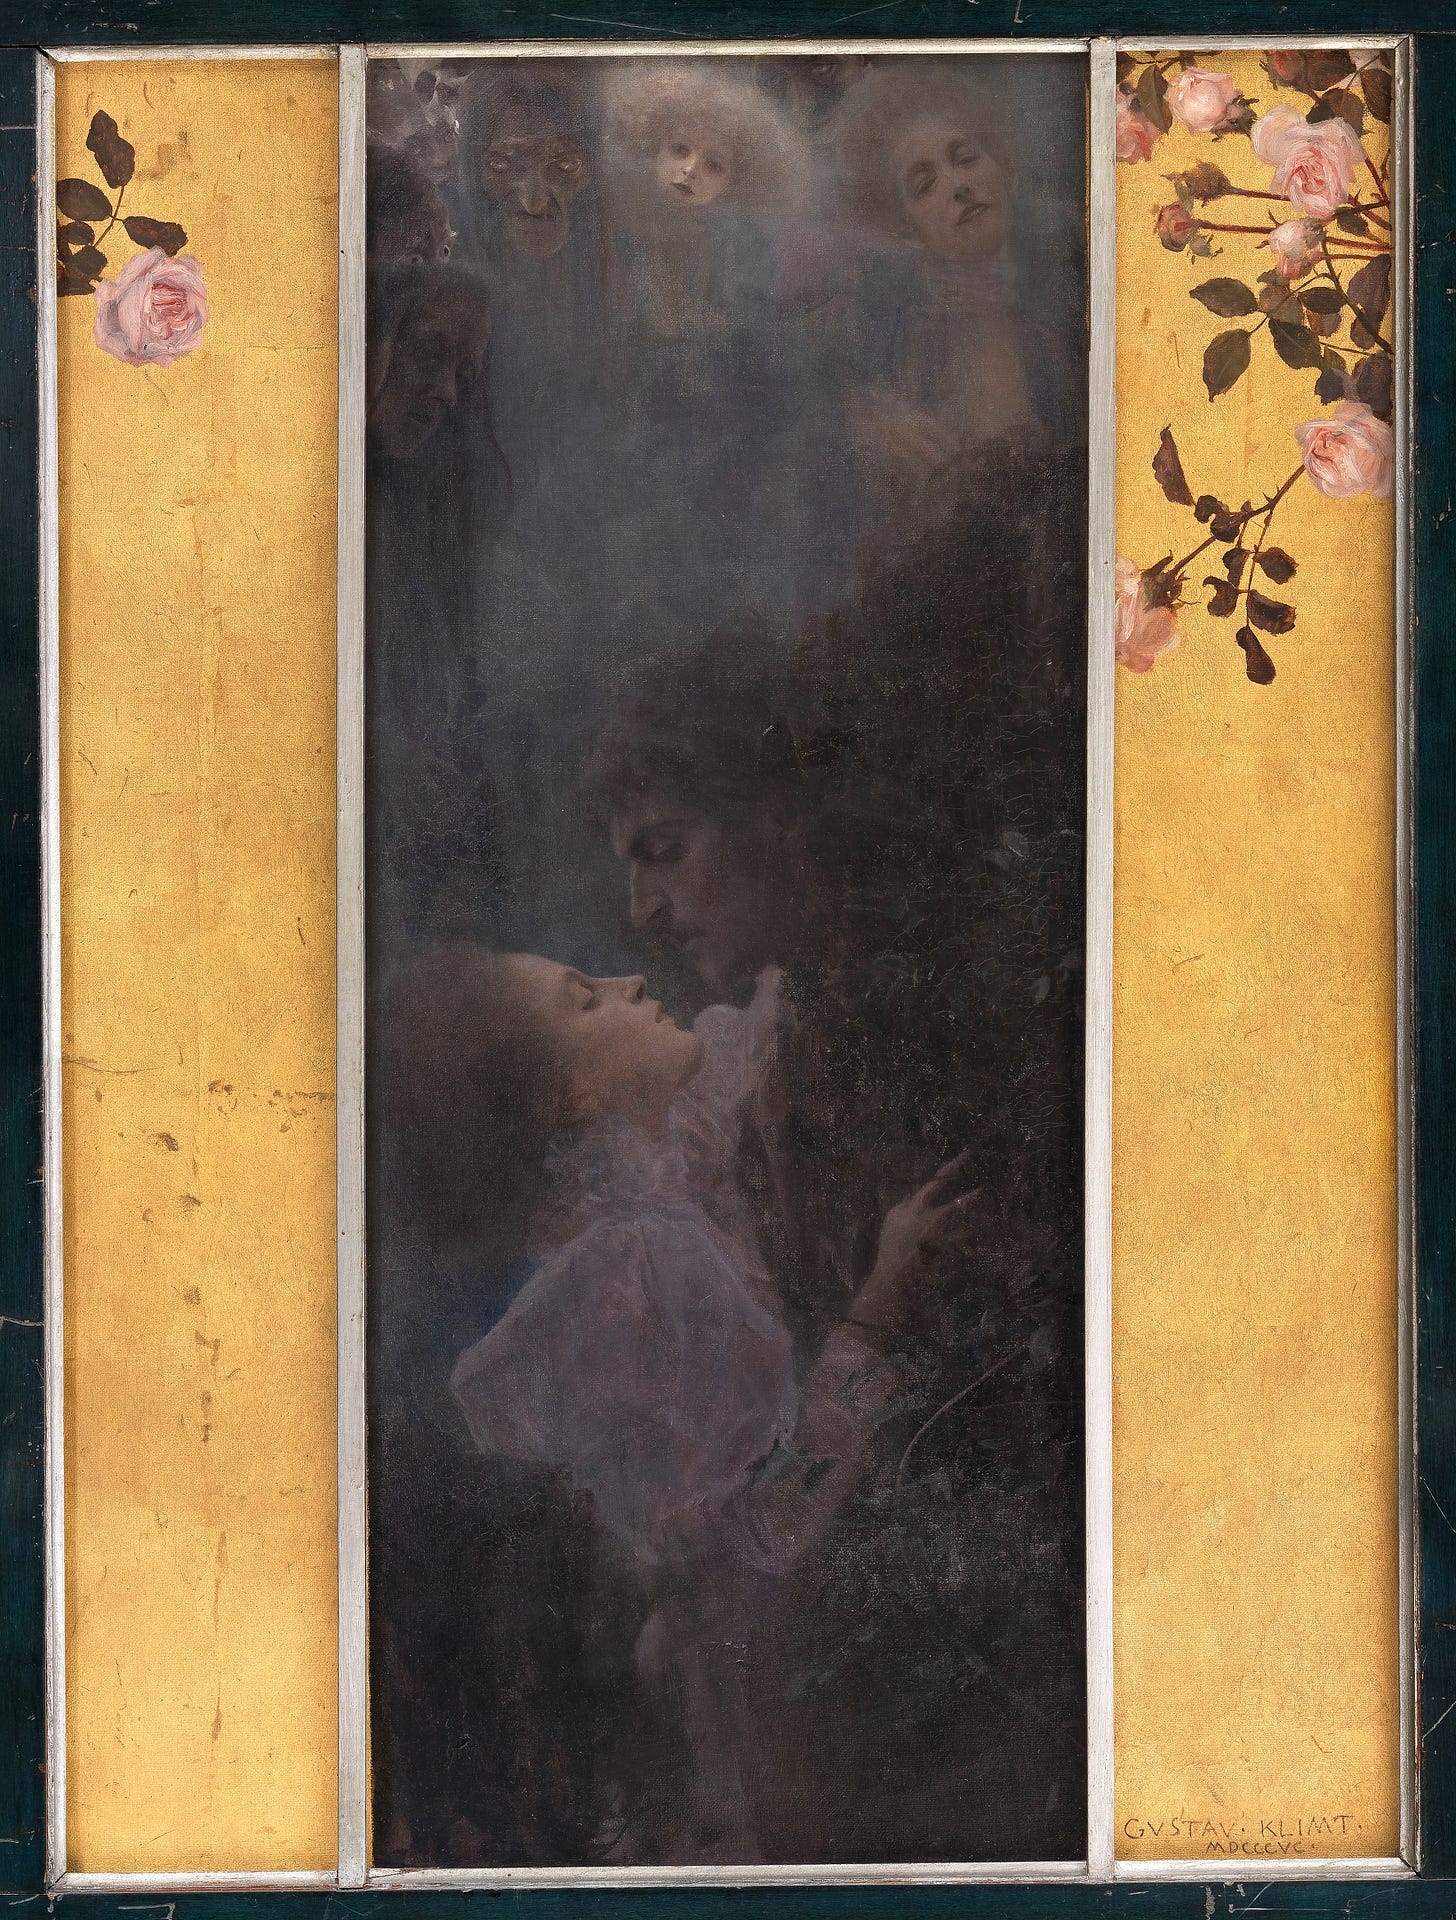 Liebe (1895) by Gustav Klimt